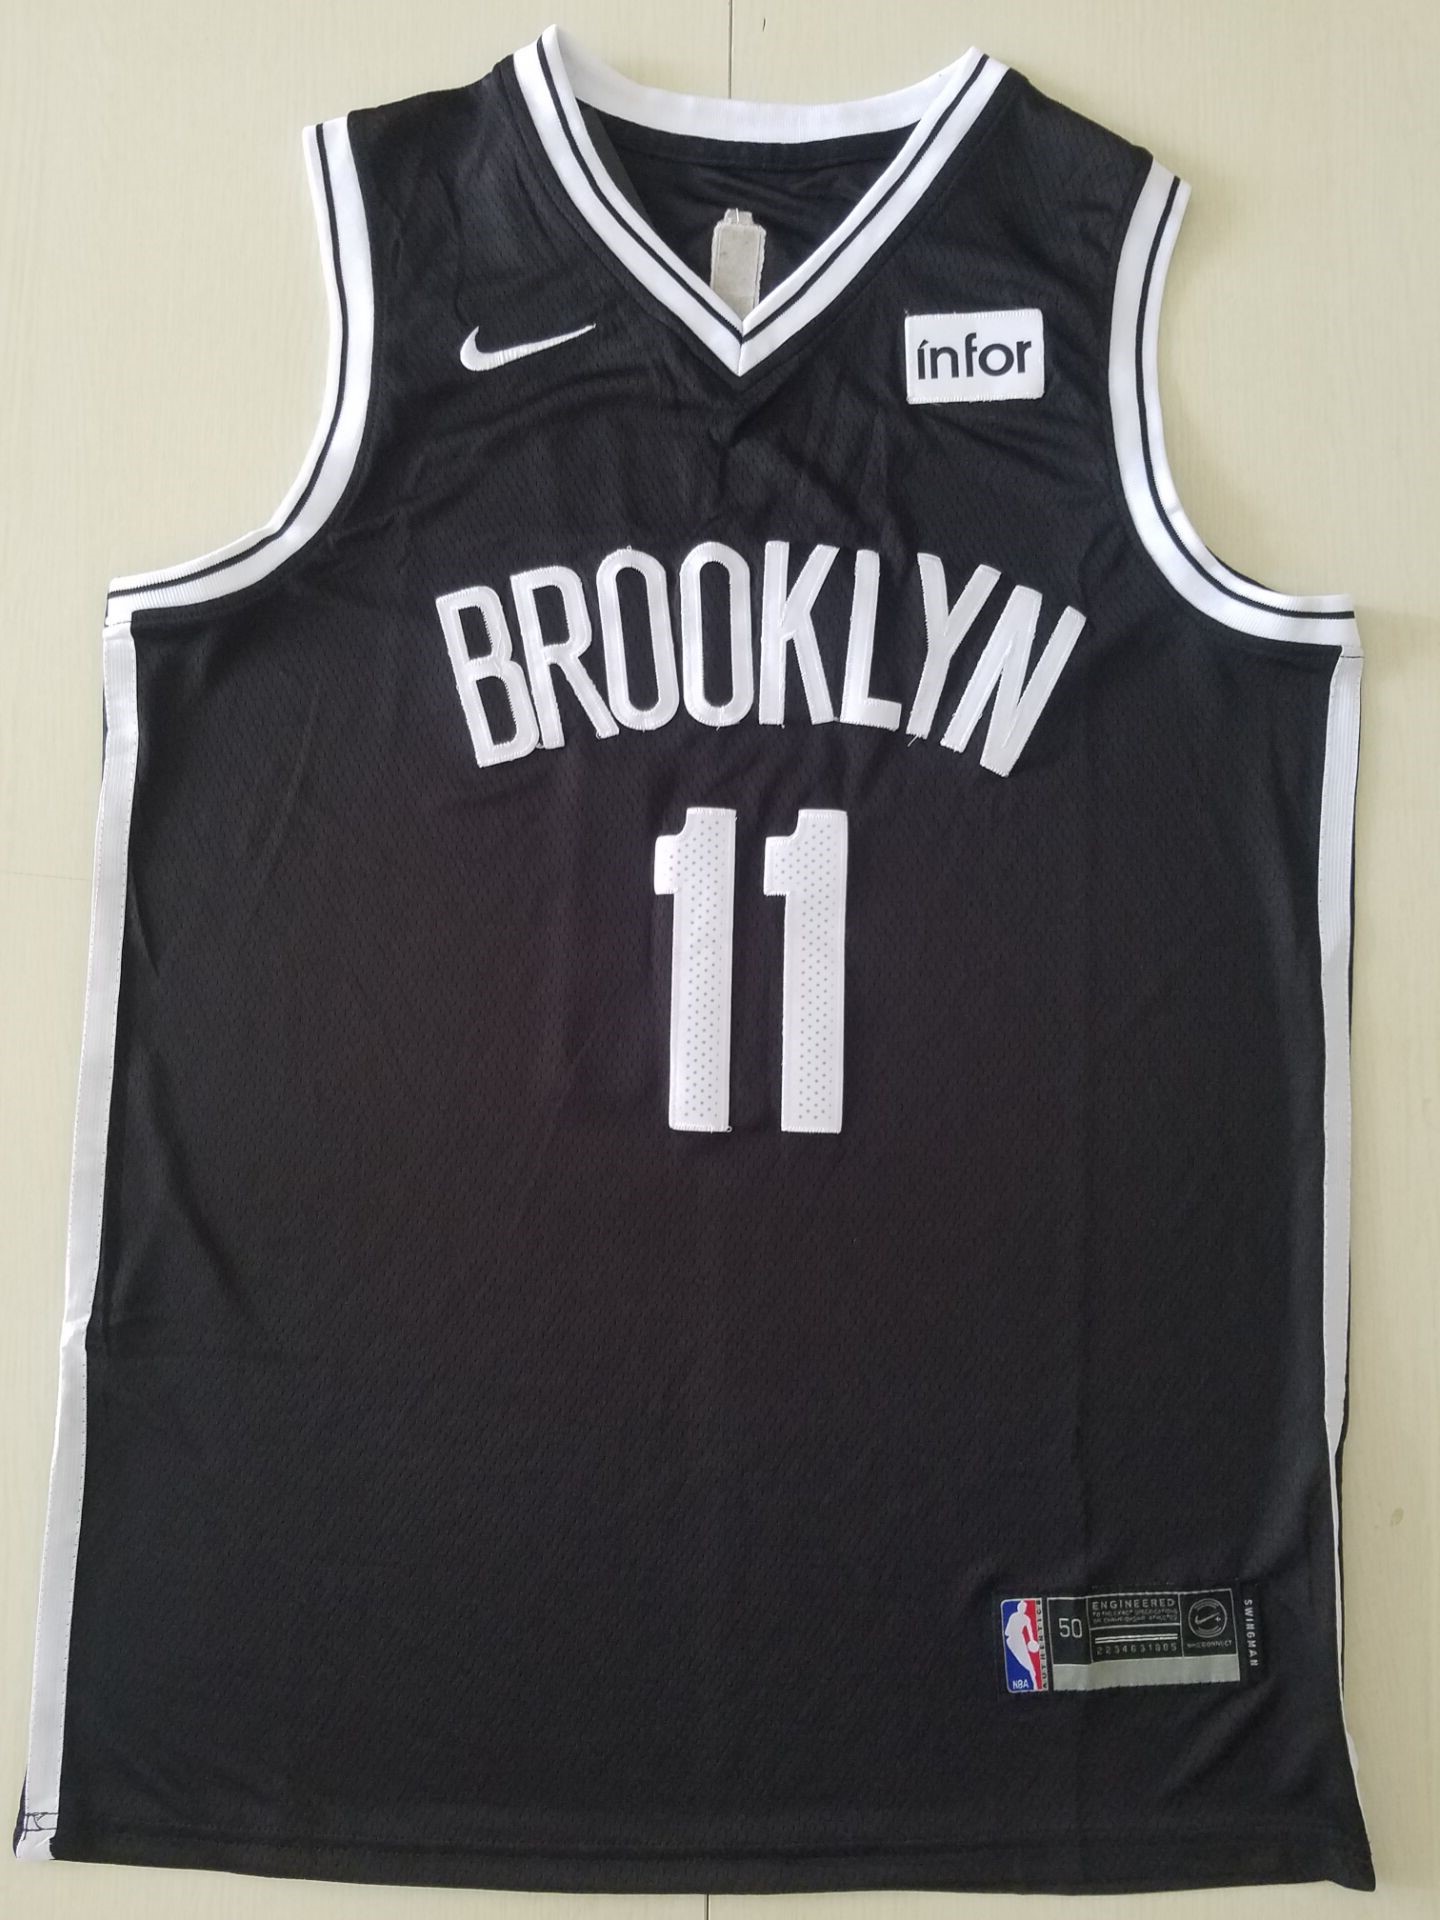 Youth Brooklyn Nets #11 Irving black Nike Game NBA Jerseys 2->youth nba jersey->Youth Jersey